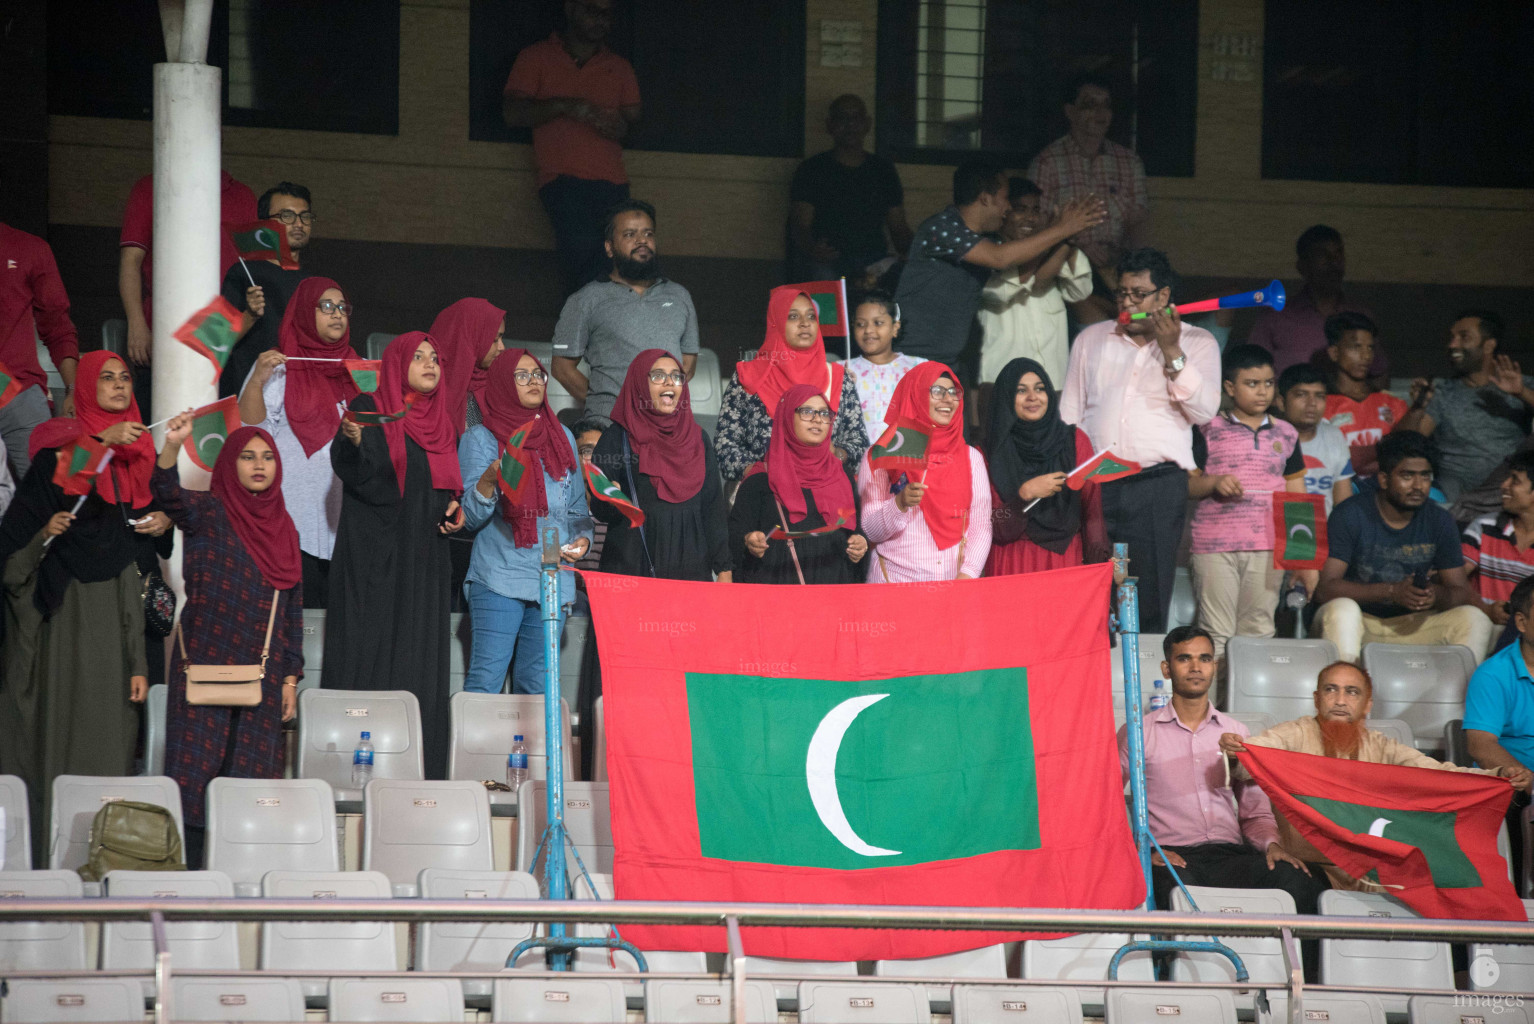 epal vs Maldives in SAFF Suzuki Cup 2018 semifinals in Dhaka, Bangladesh, Wednesdayepal vs Maldives in SAFF Suzuki Cup 2018 semifinals in Dhaka, Bangladesh, Wednesday, September 12, 2018. (Images.mv Photo/, September 12, 2018. (Images.mv Photo/Ismail Thoriq)